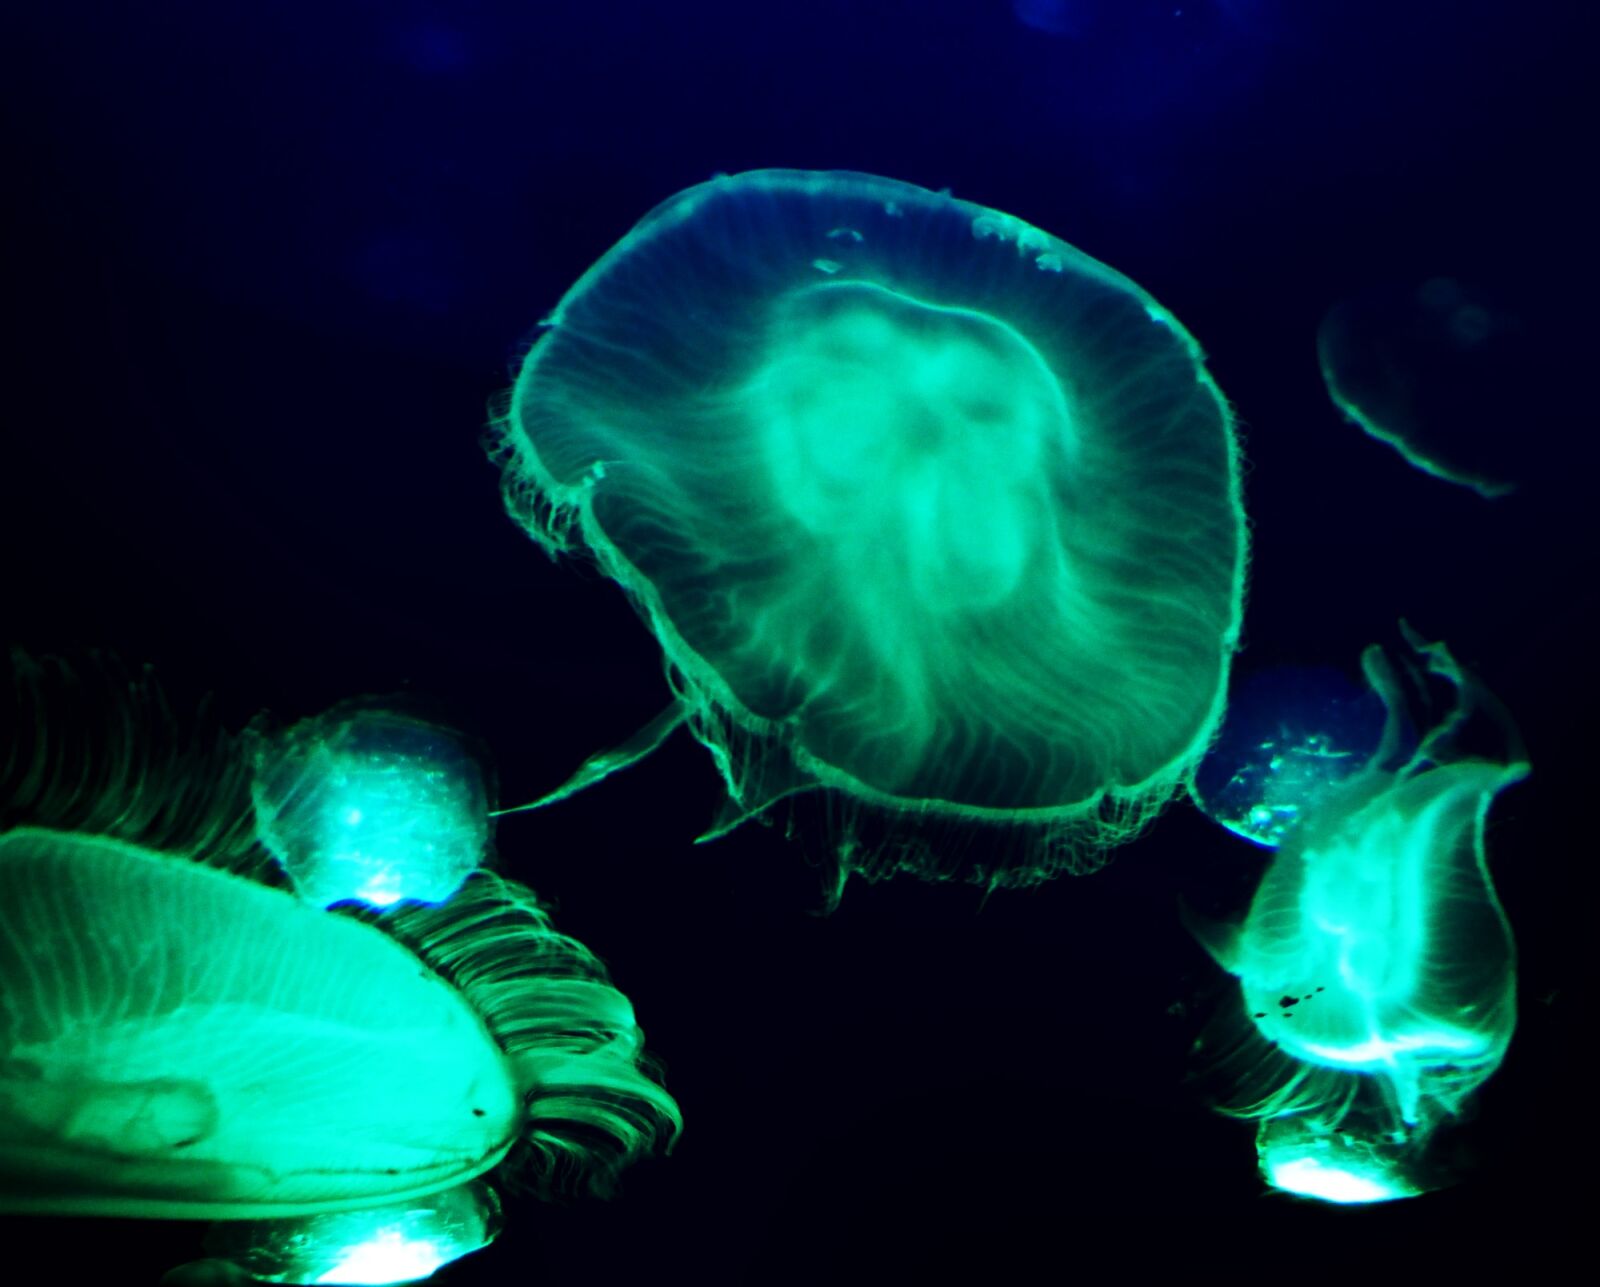 Panasonic DMC-TZ31 sample photo. Jellyfish, underwater, deep photography